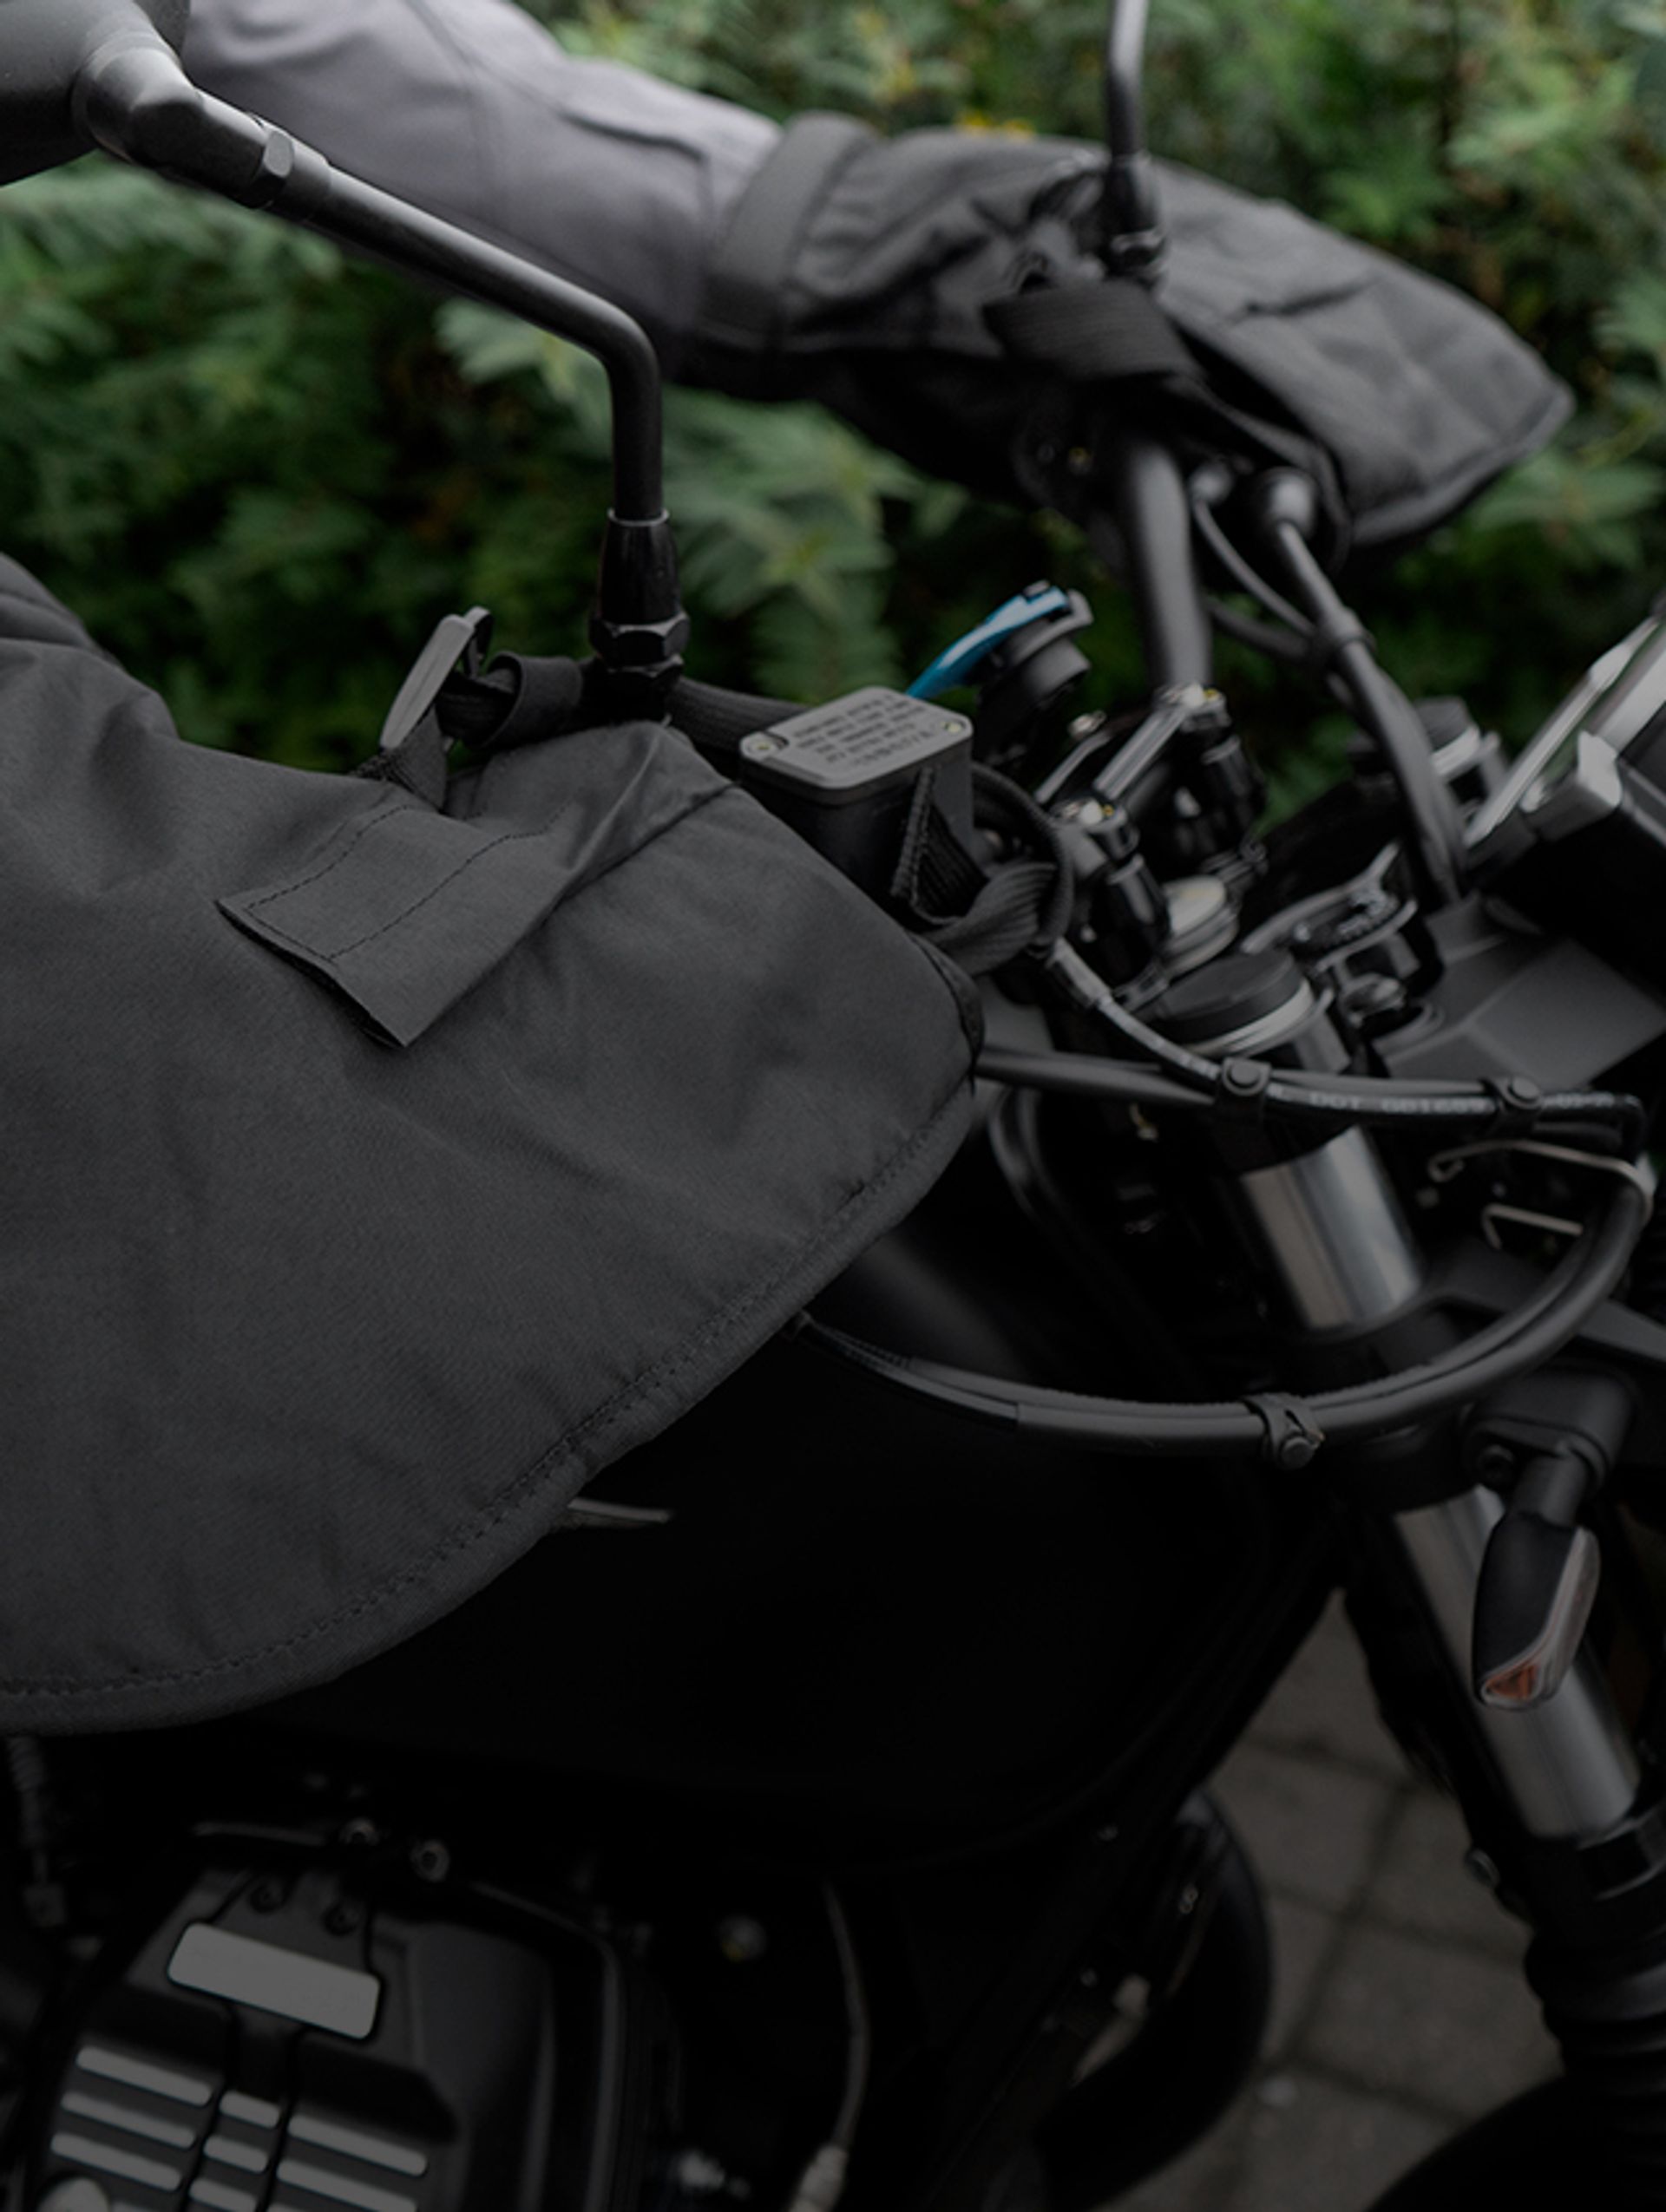 Des produits techniques, confortables et sécuritaires au meilleur prix. Découvrez les marques Motoblouz, conçues par des motards pour les motards.